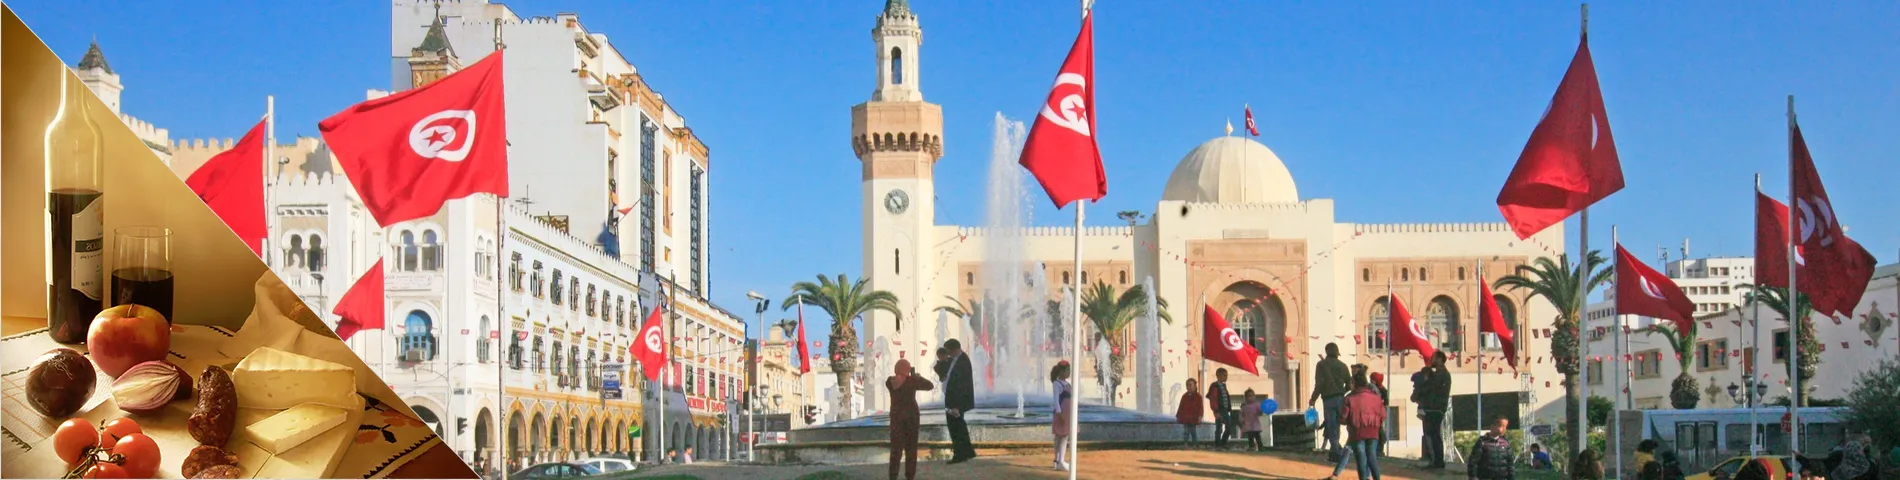 Sfax - Arabe & Culture